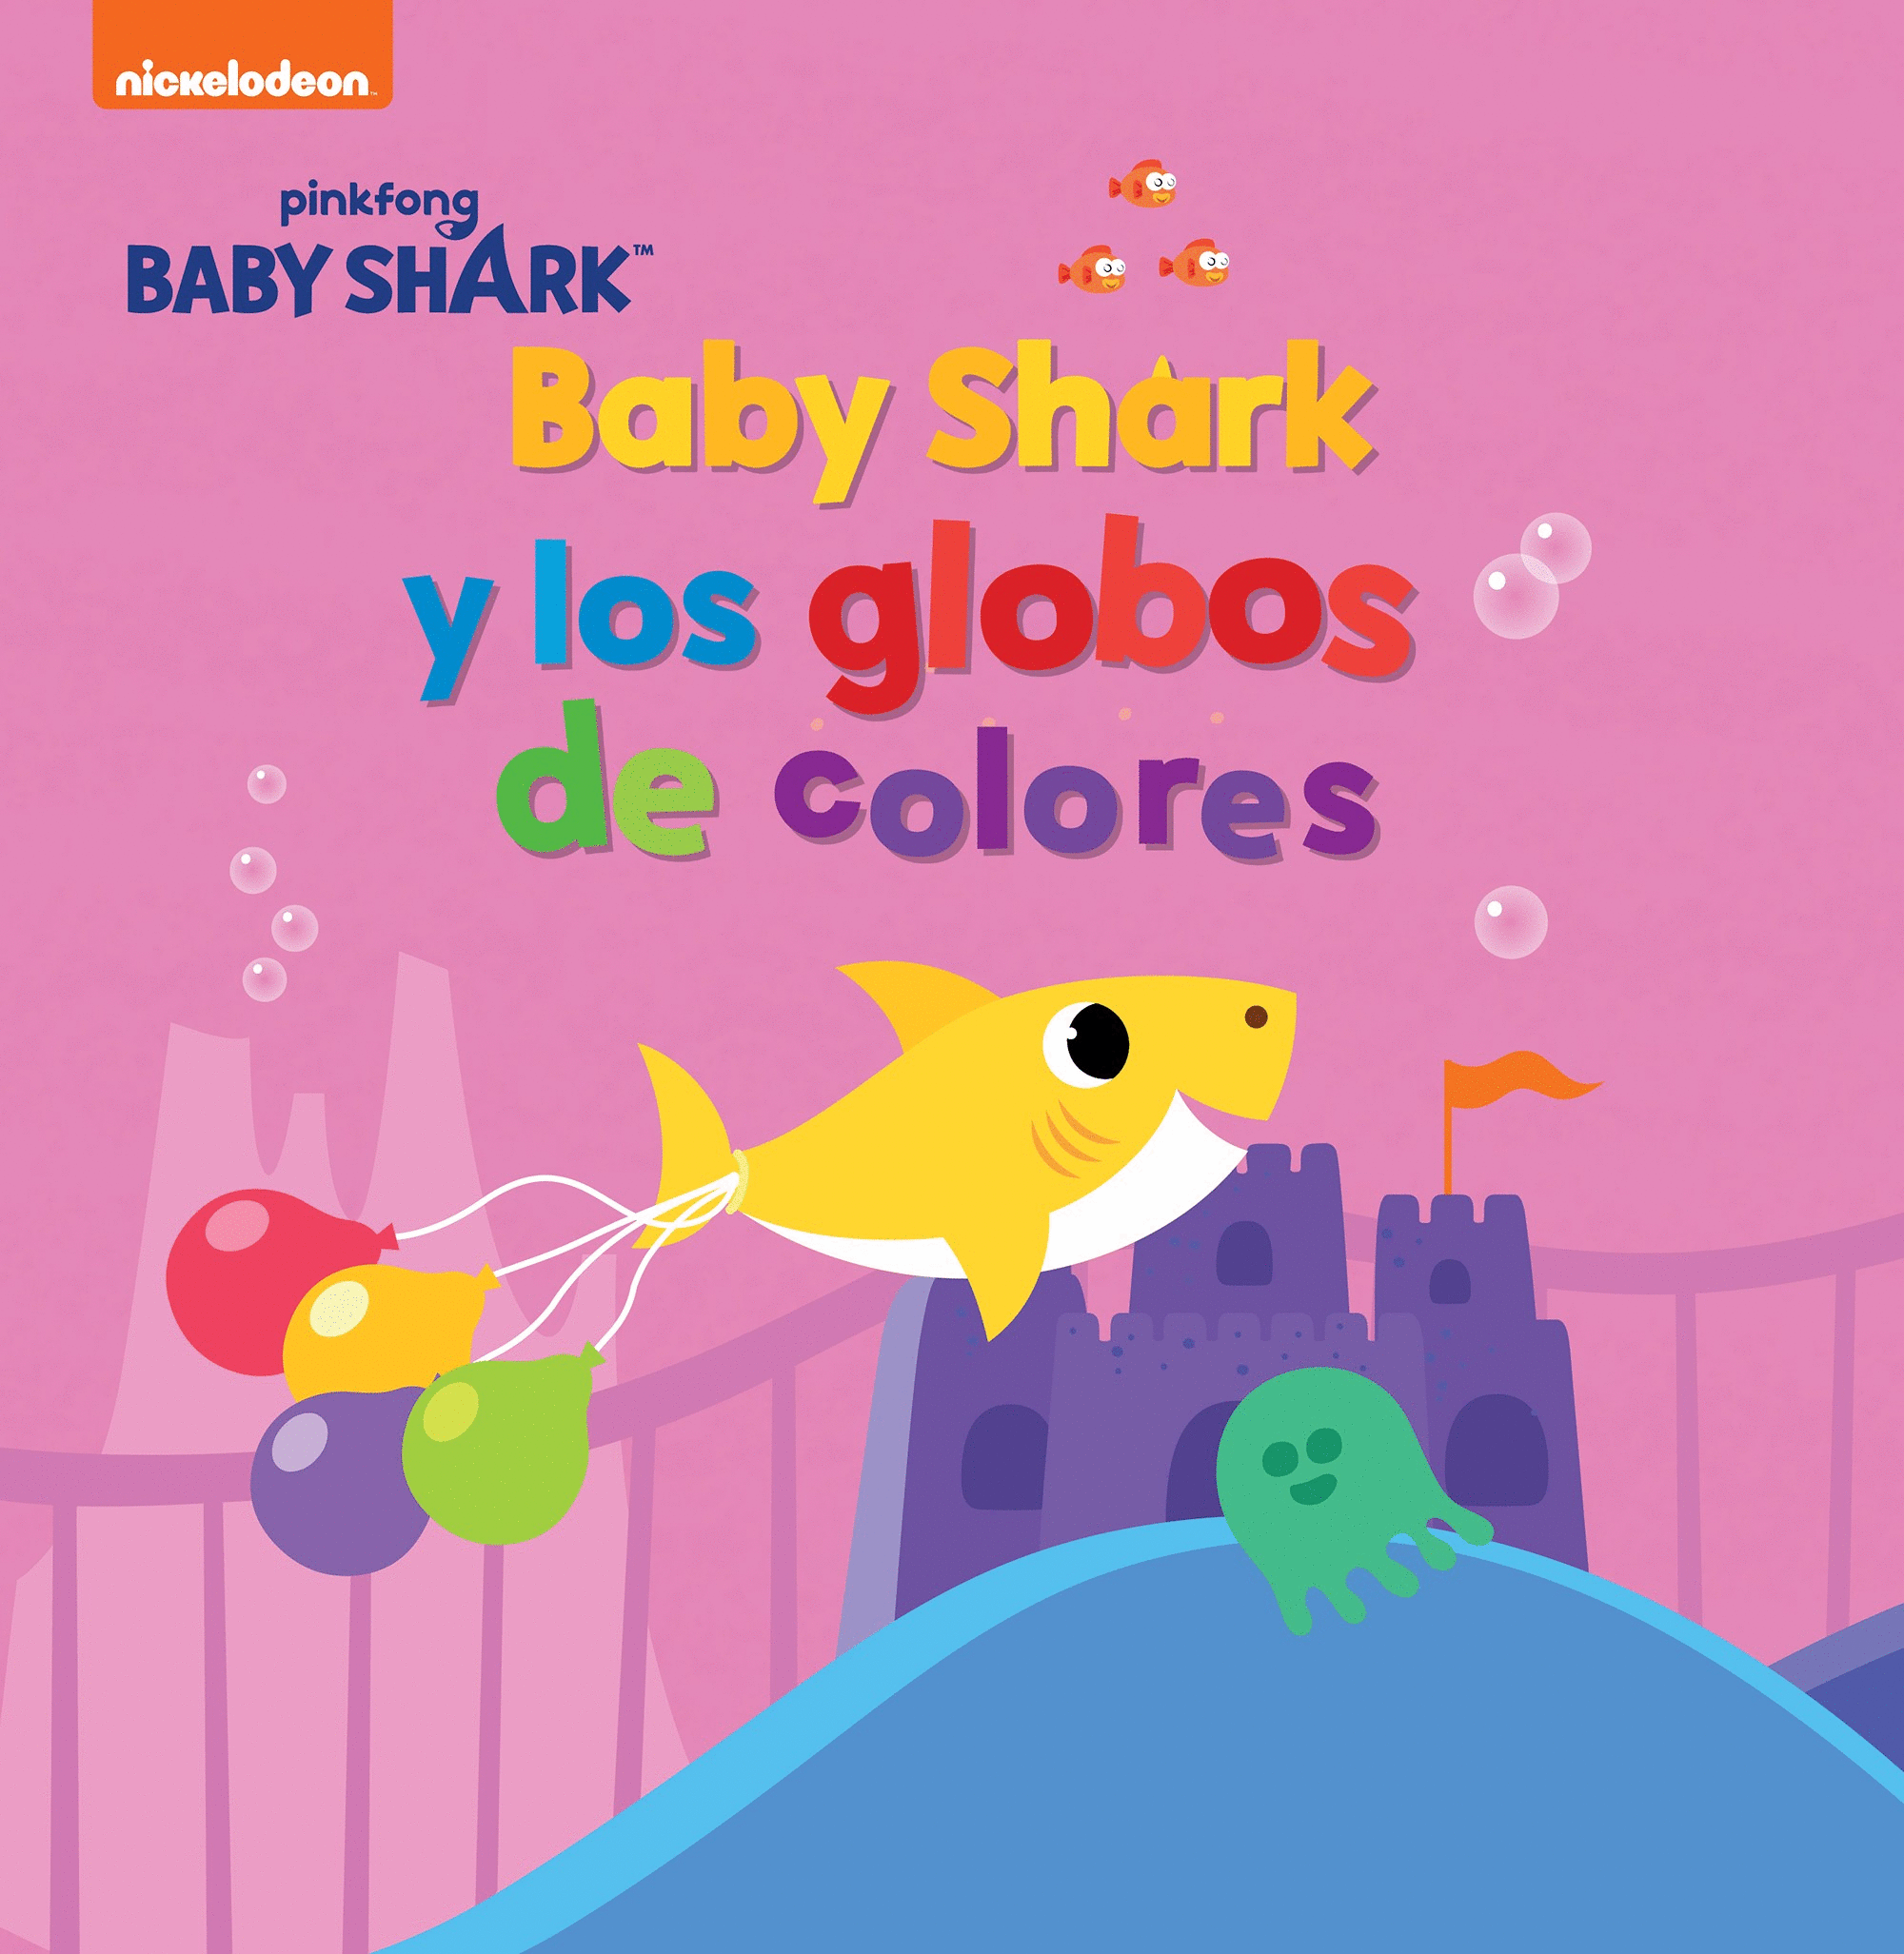 BABY SHARK Y LOS GLOBOS DE COLORES